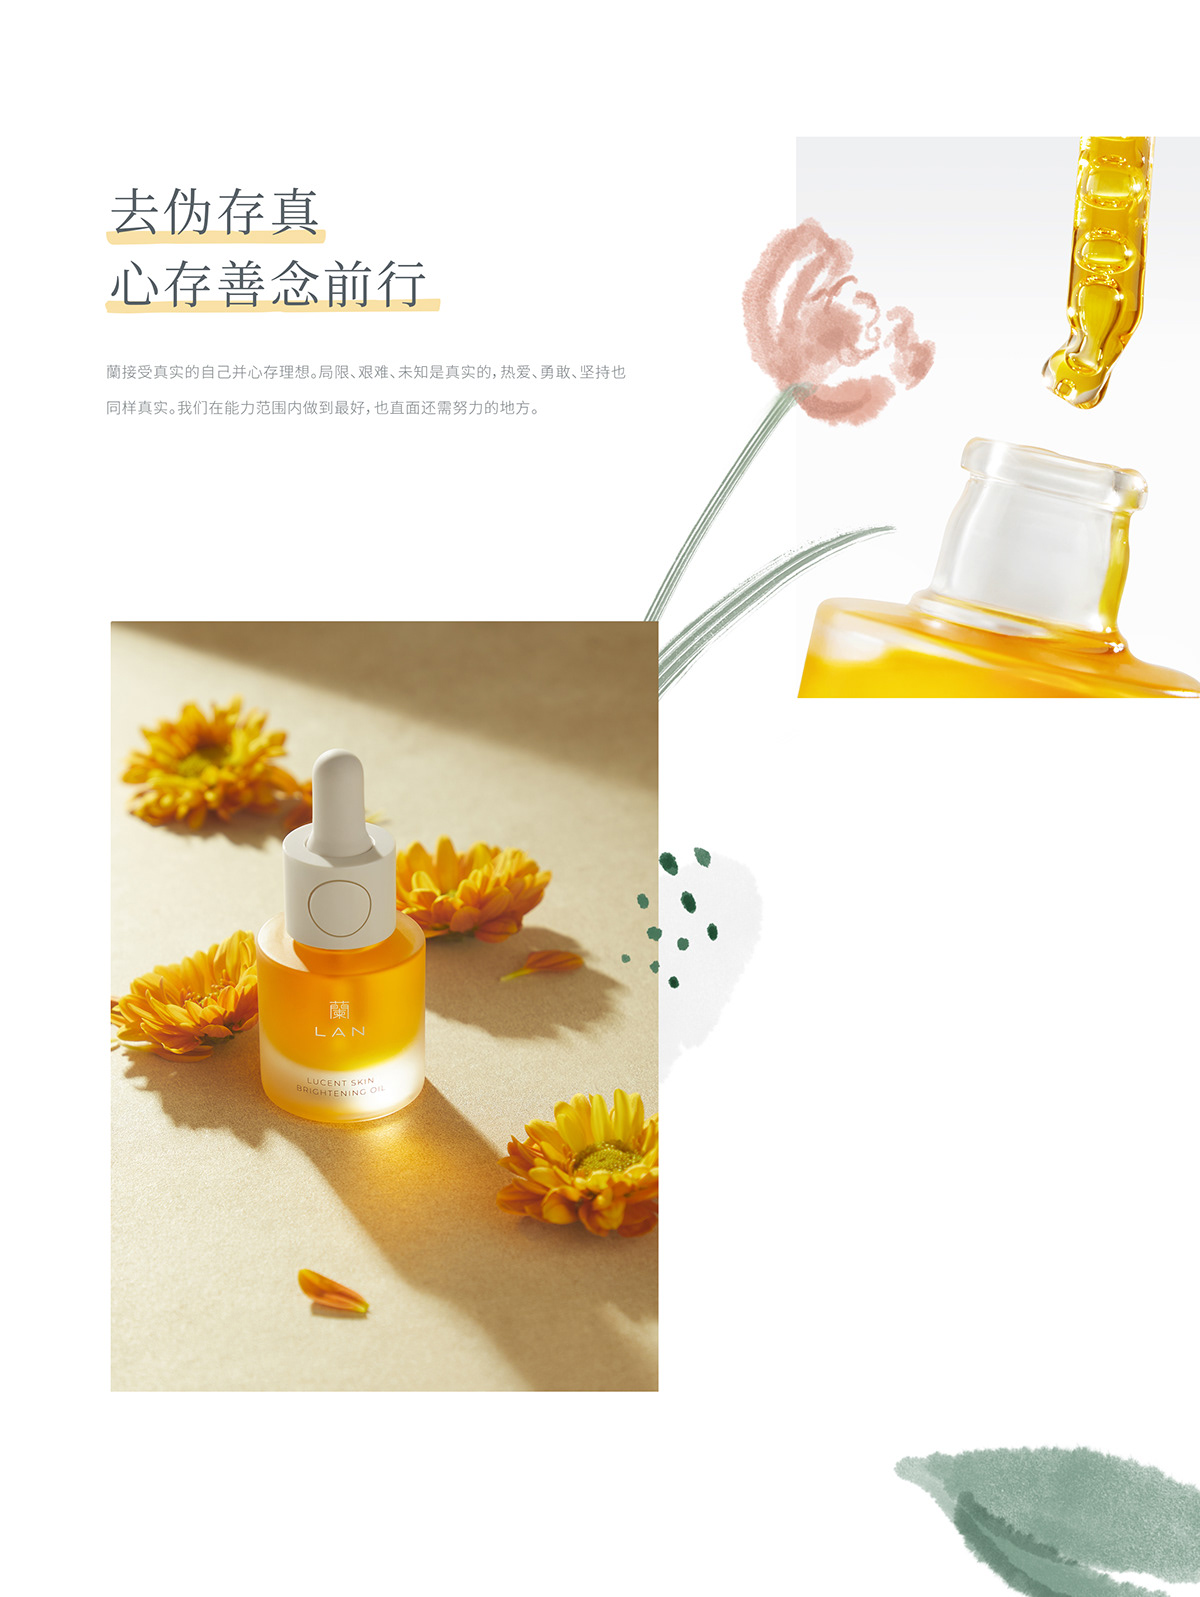 brand china Chinese style skin care VI 包装设计 品牌设计 护肤品